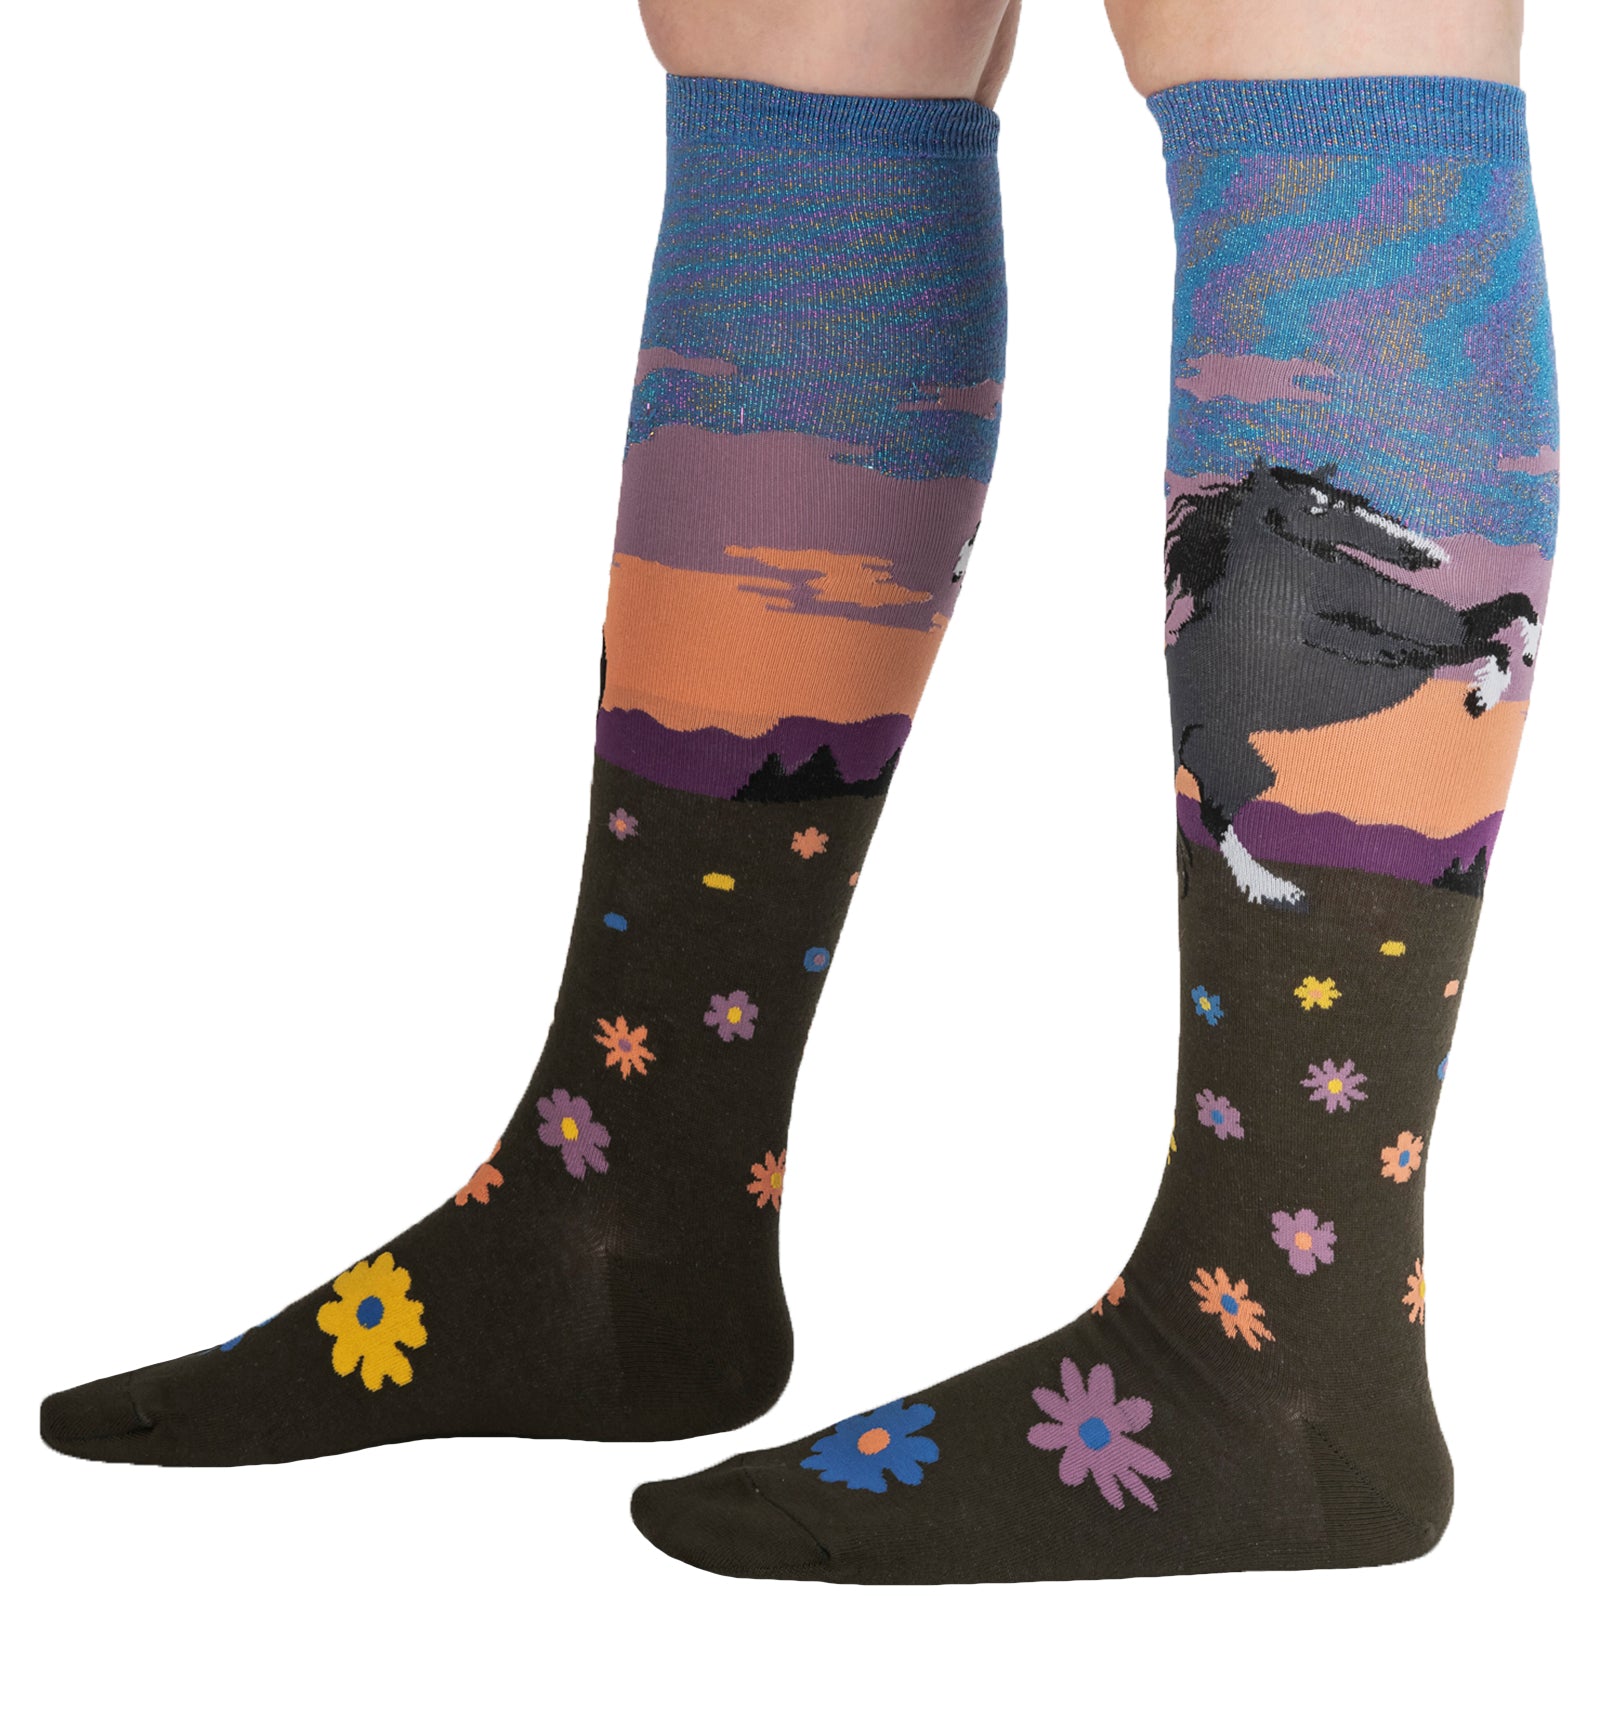 SOCK it to me Unisex Knee High Socks (F0630),Black Beauty - Black Beauty,One Size